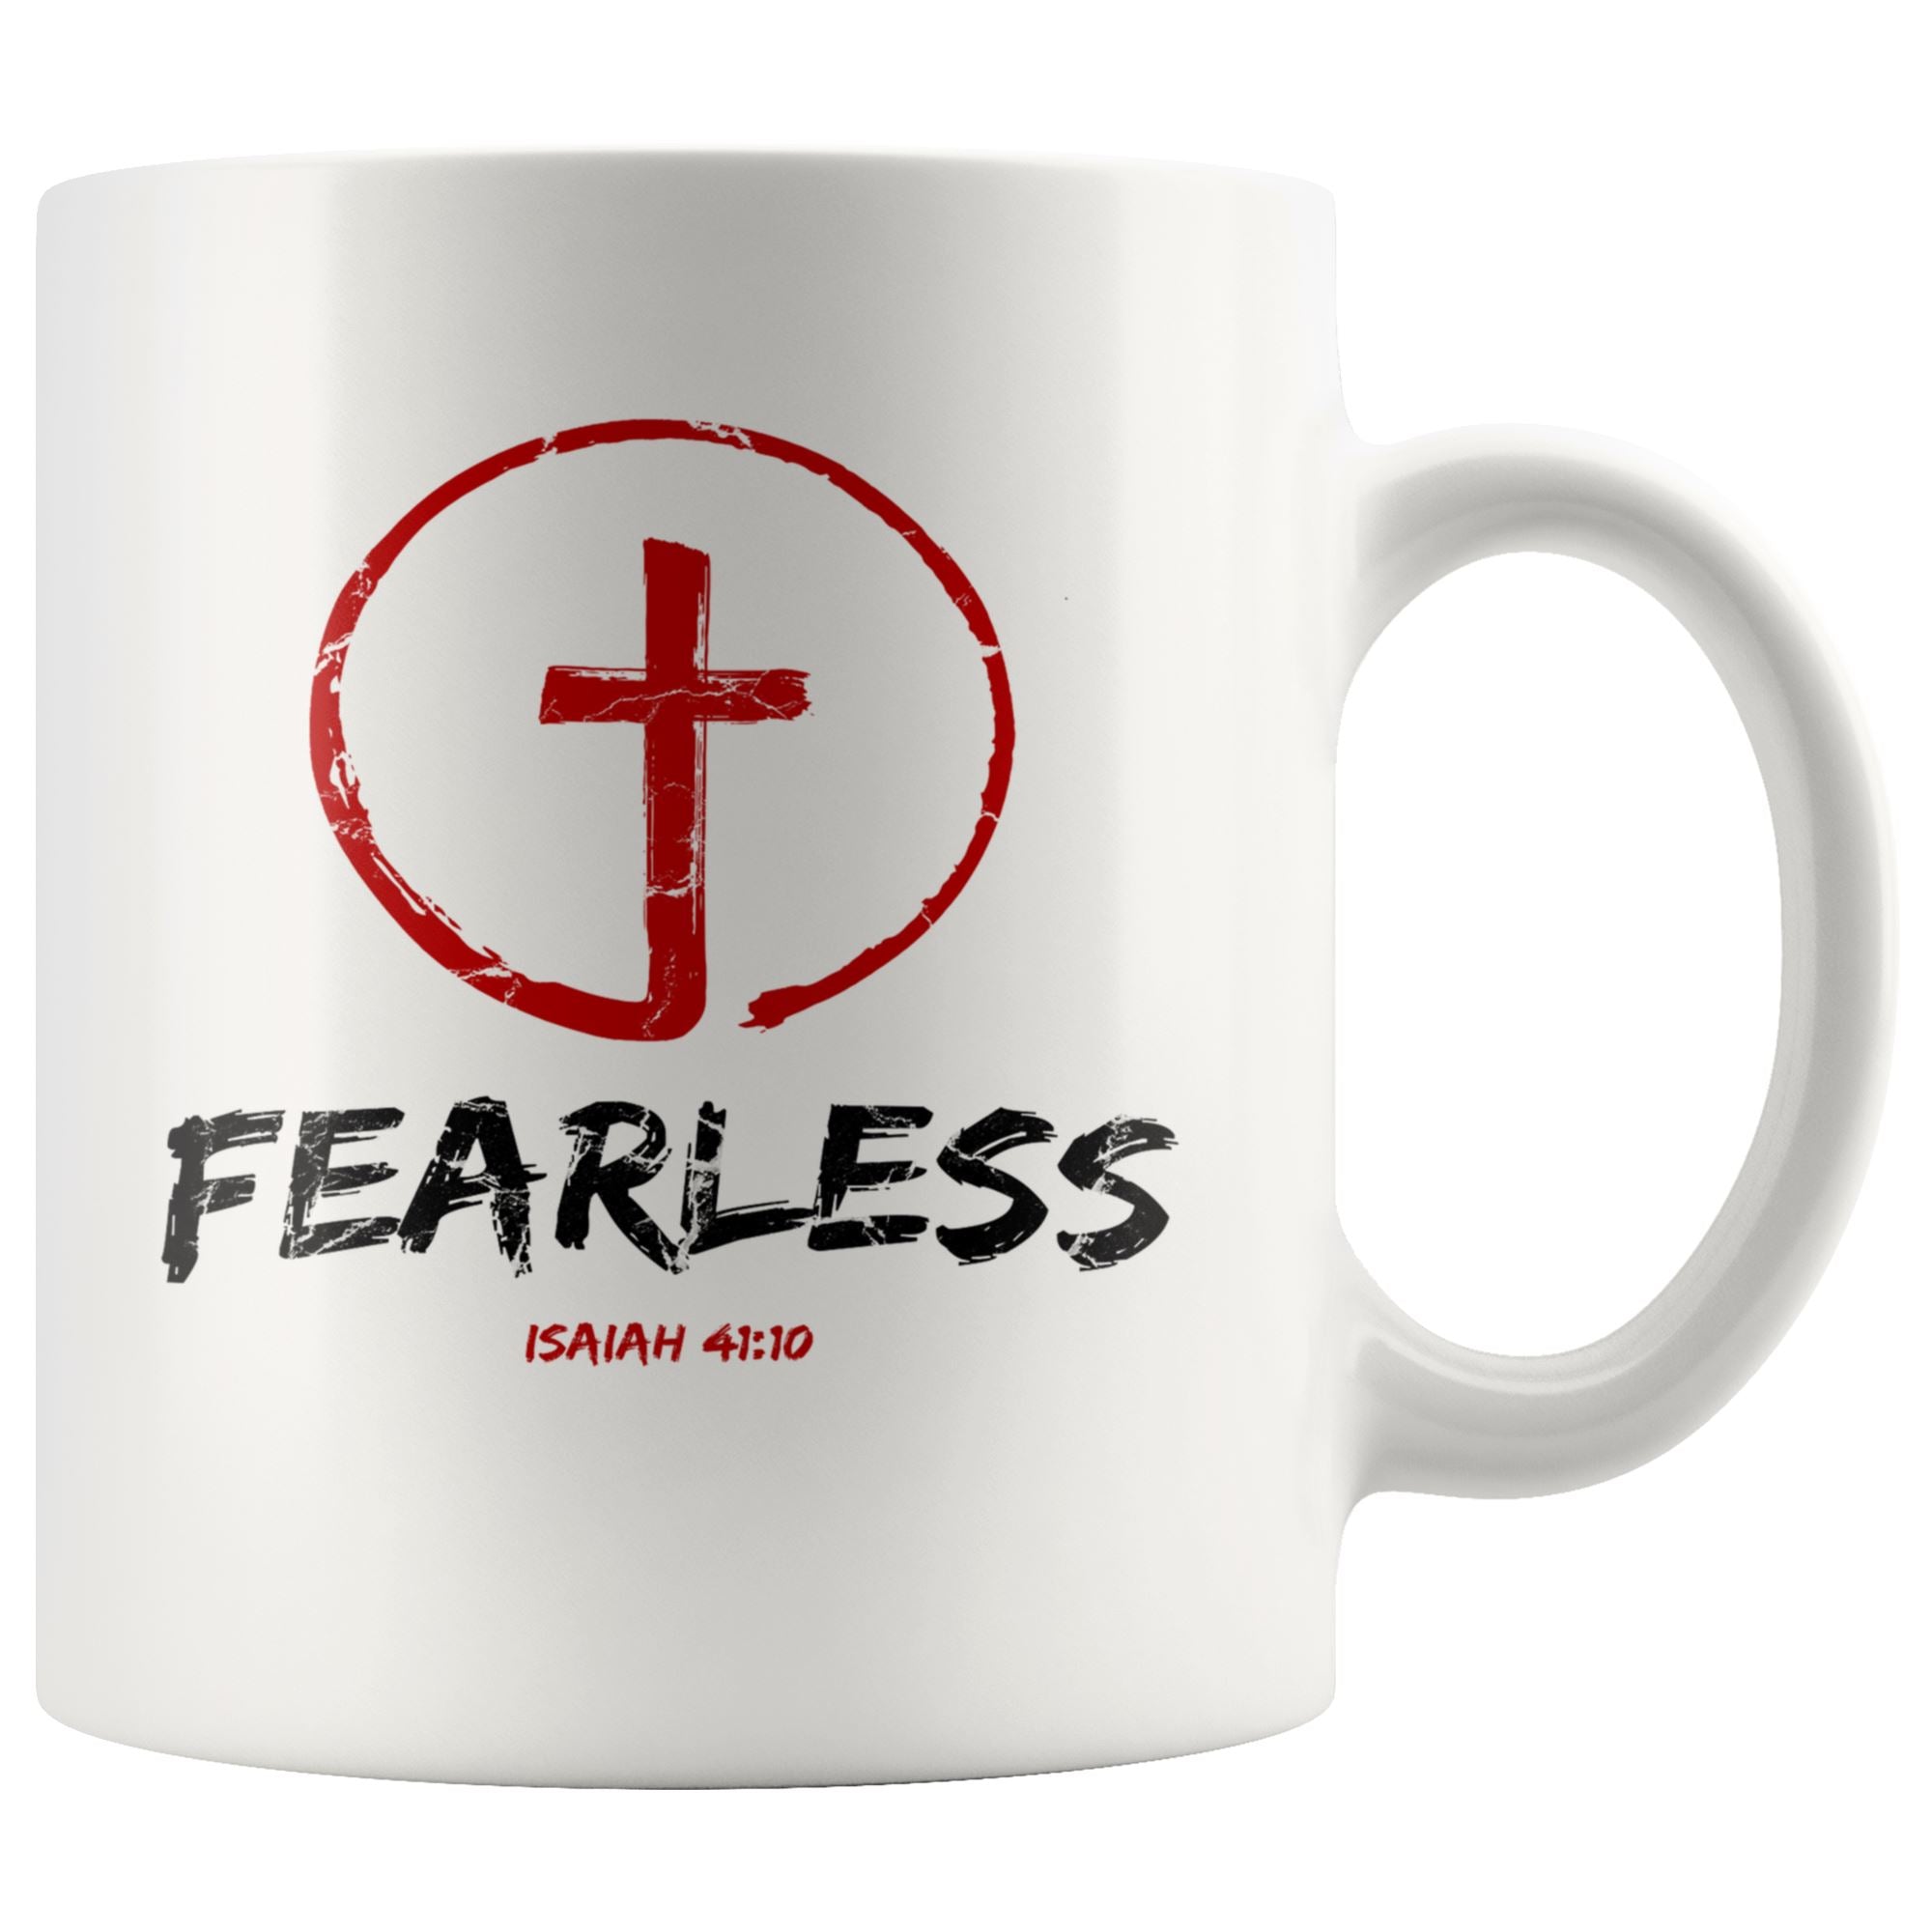 Fearless Mug Drinkware teelaunch 11oz Mug 